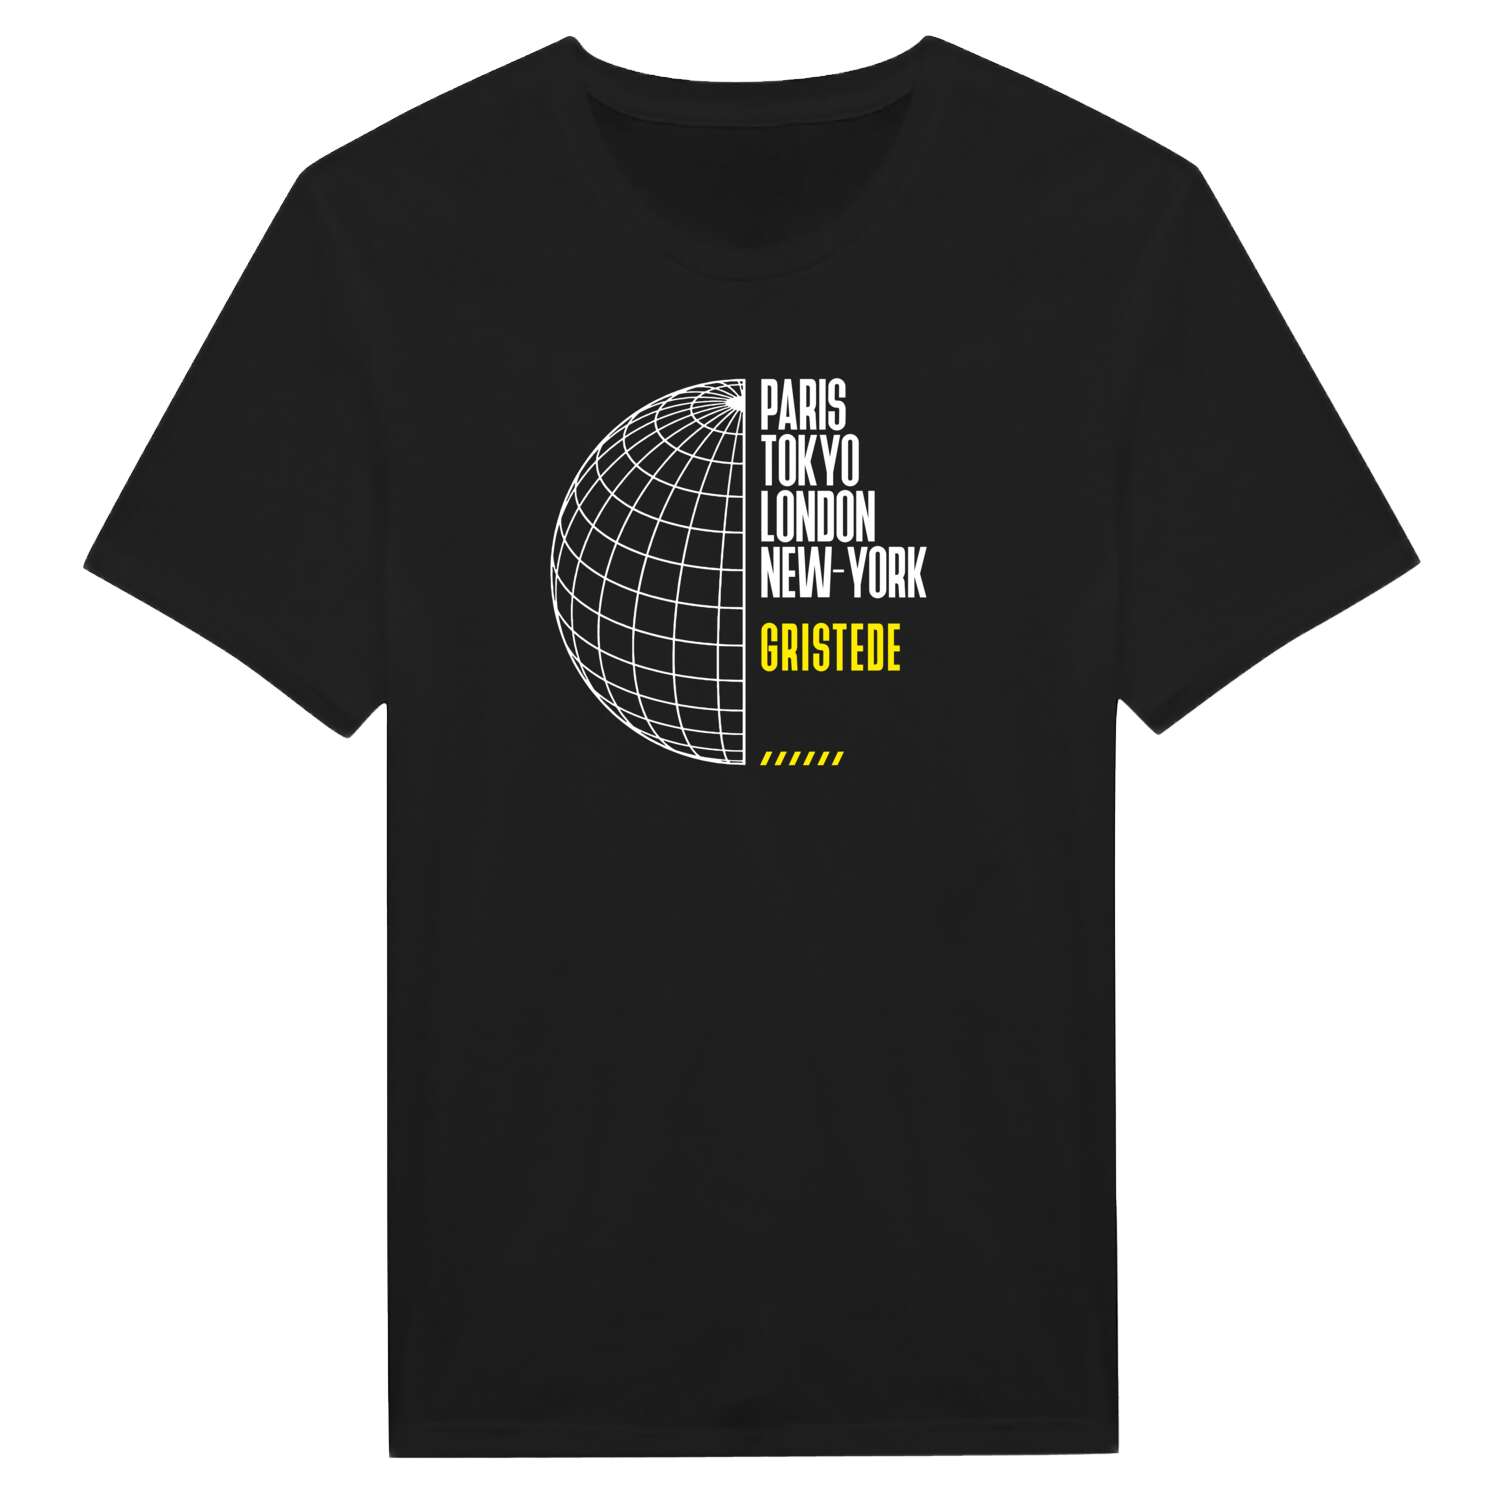 Gristede T-Shirt »Paris Tokyo London«